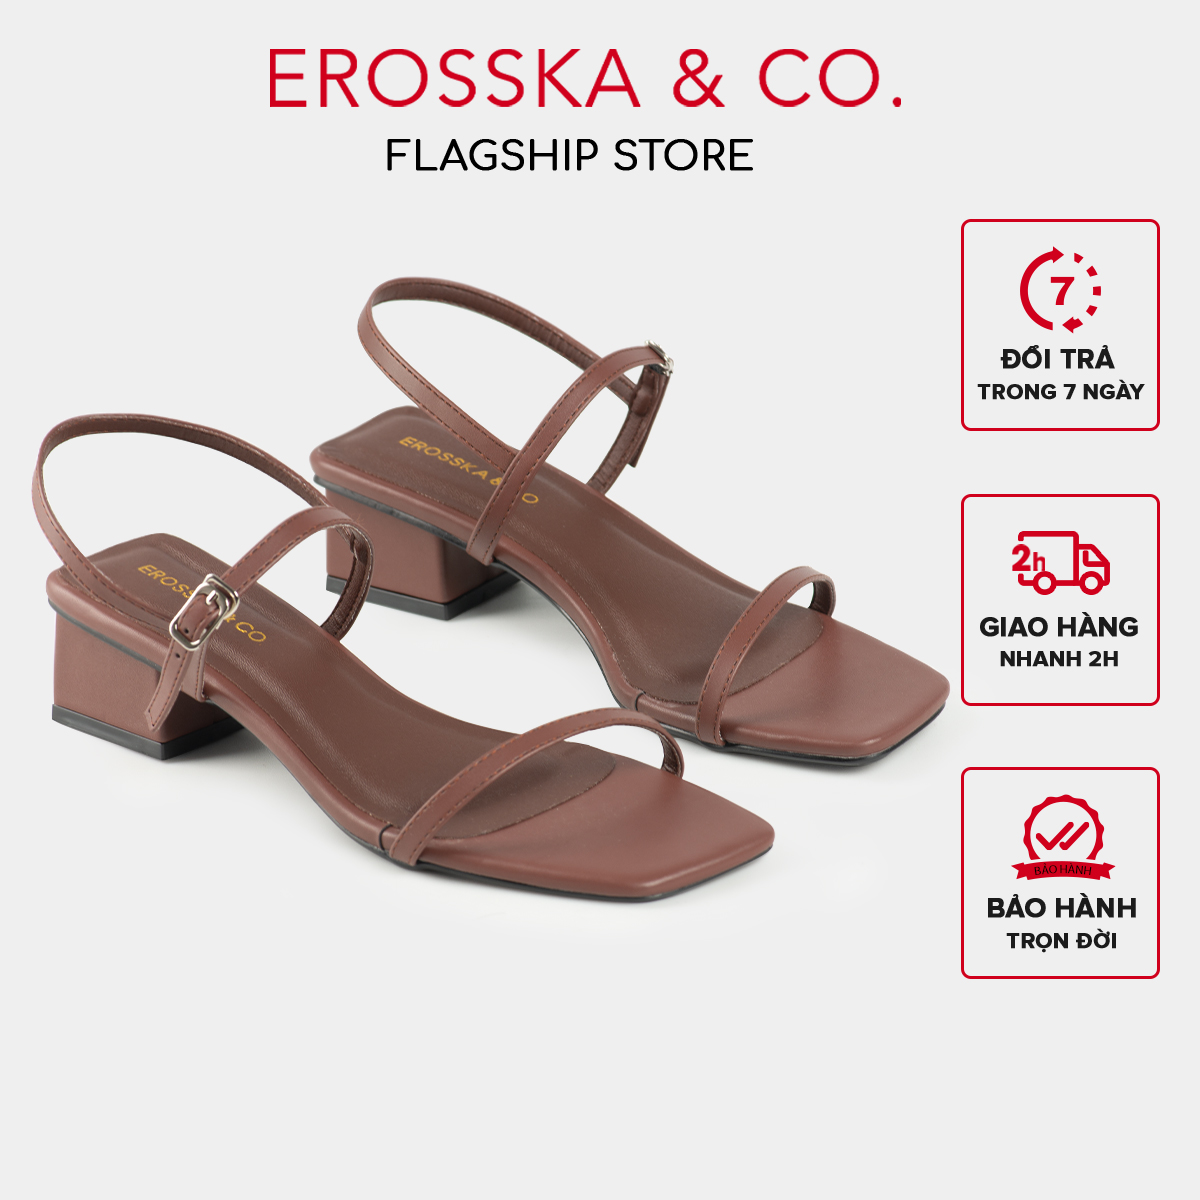 Erosska - Giày sandal cao gót phối dây kiểu dáng Hàn Quốc cao 4cm màu nâu _ EM079